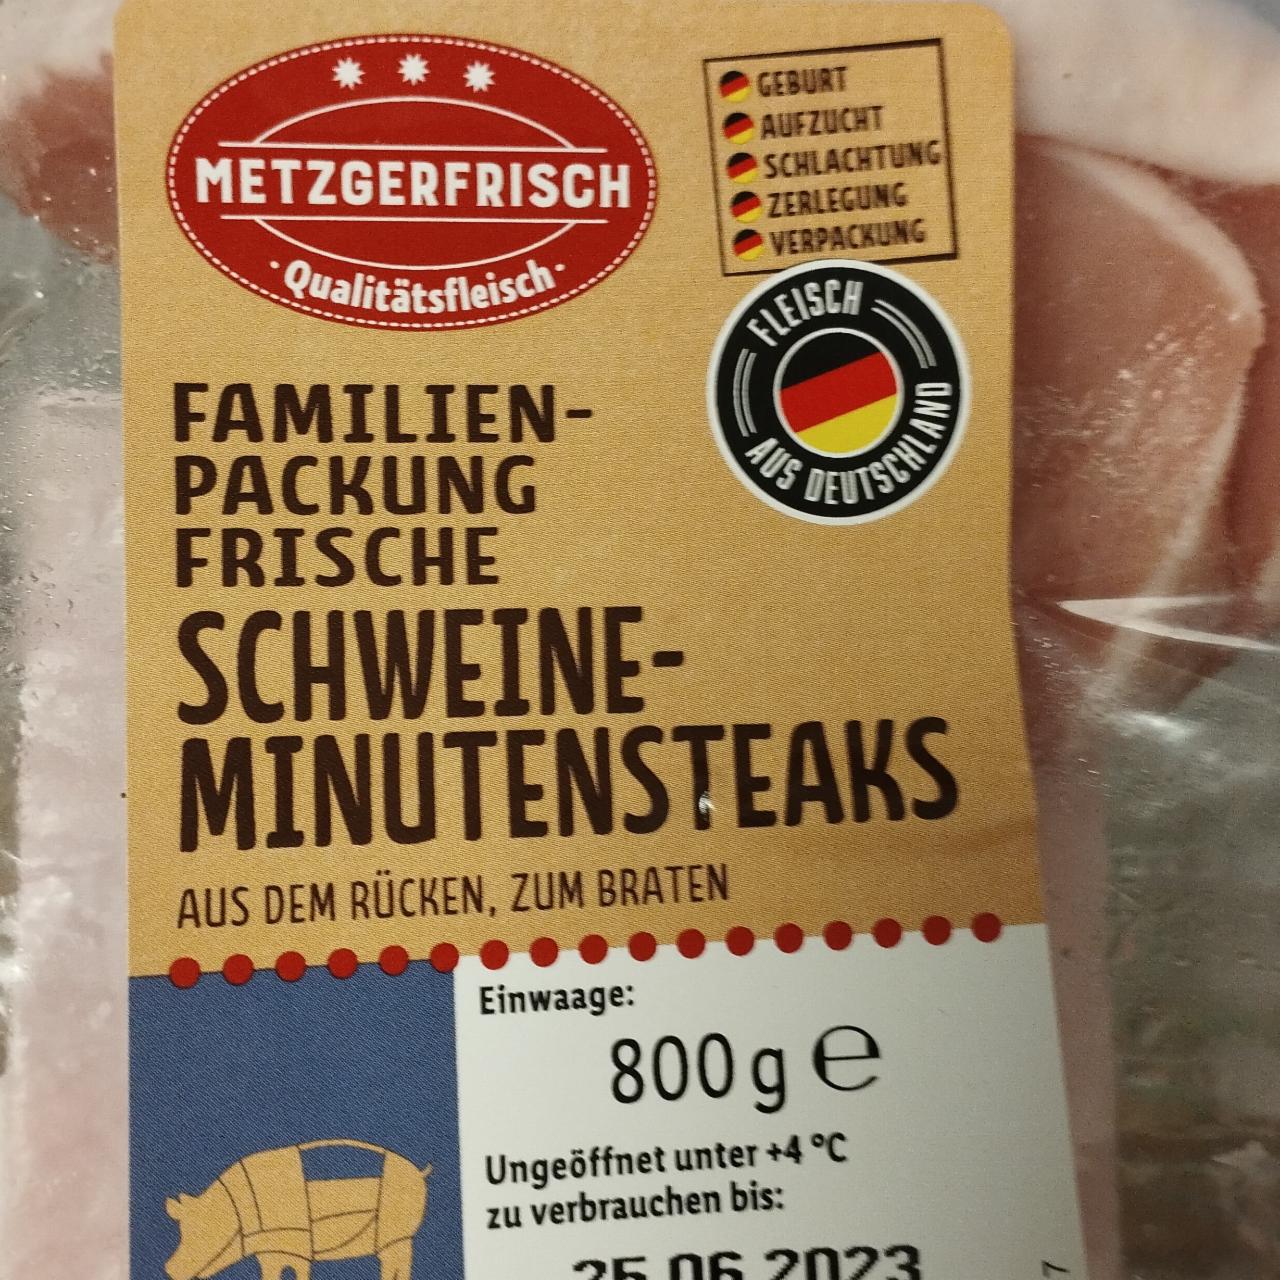 Фото - Familien-packung frische schweine minutensteaks Metzgerfrisch